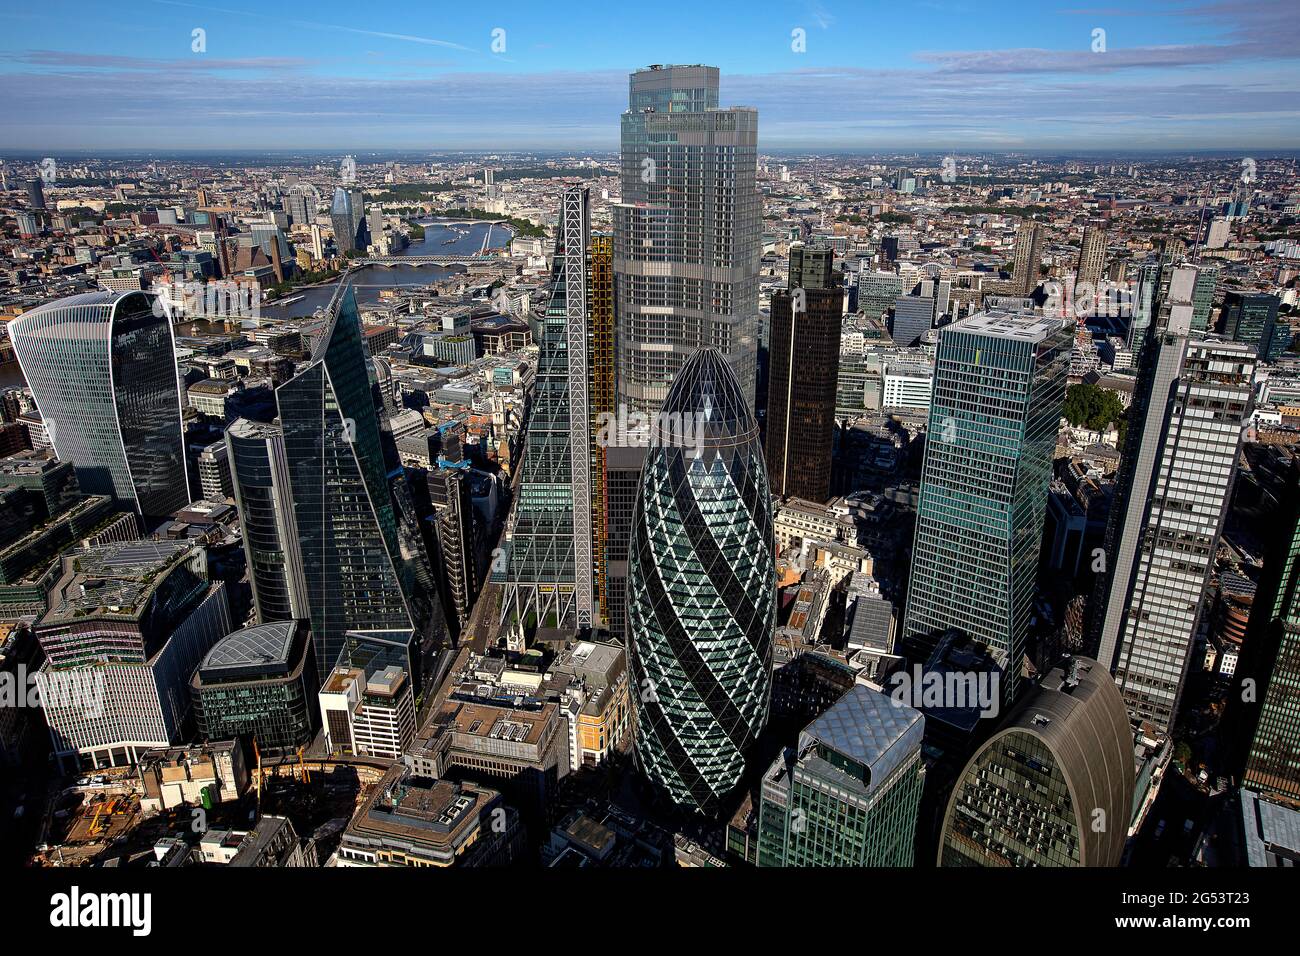 Regno Unito, Londra, città di Londra, vista aerea del quartiere degli affari Foto Stock